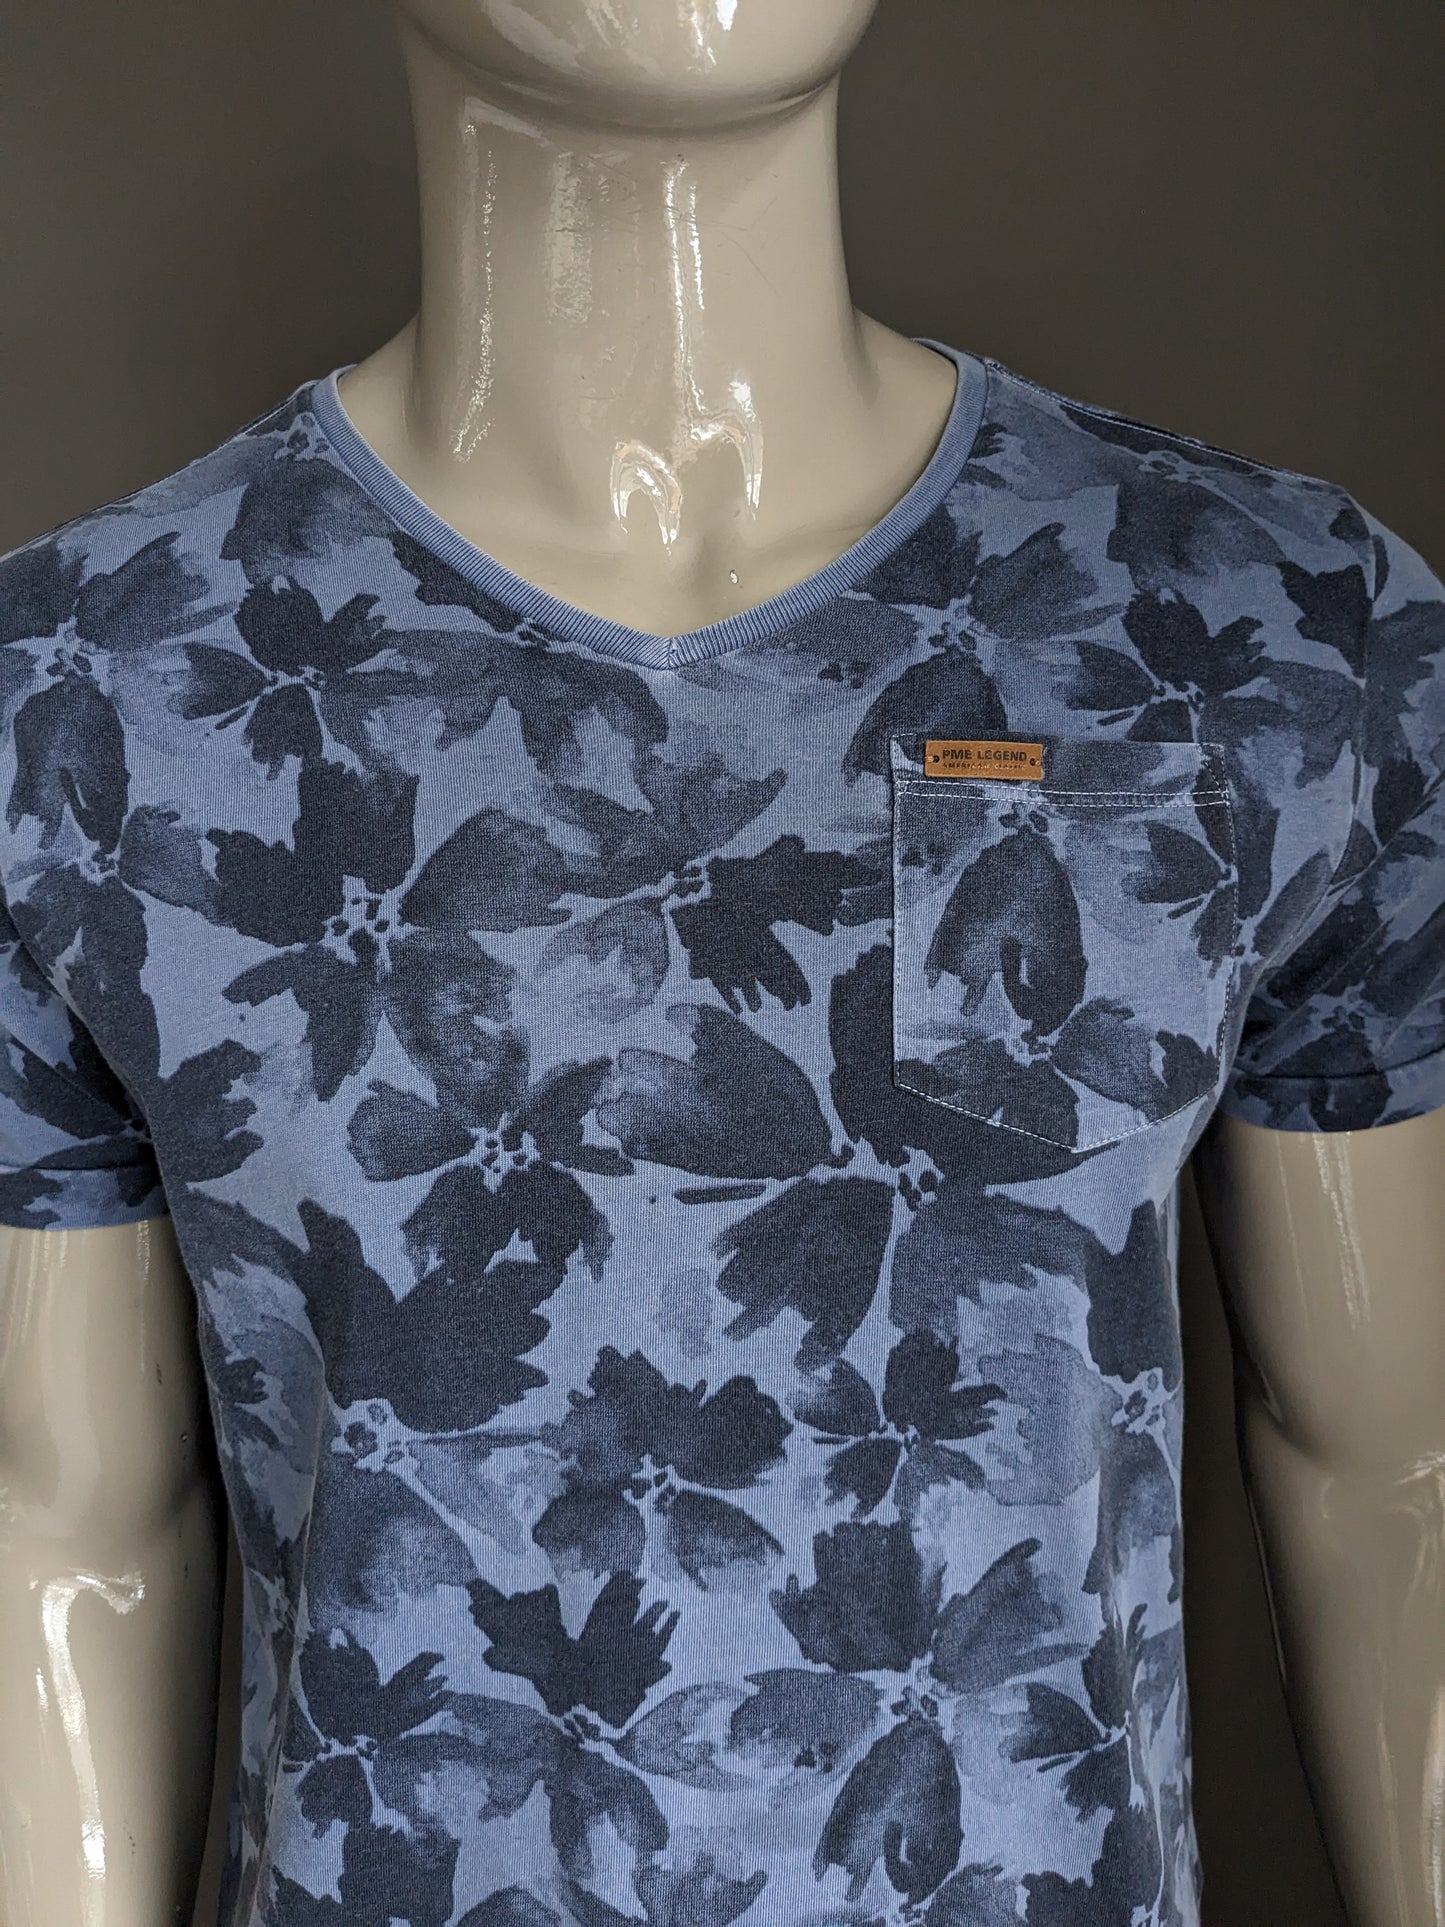 Camicia della leggenda PME con scollo a V. Stampa blu fiori. Taglia L.